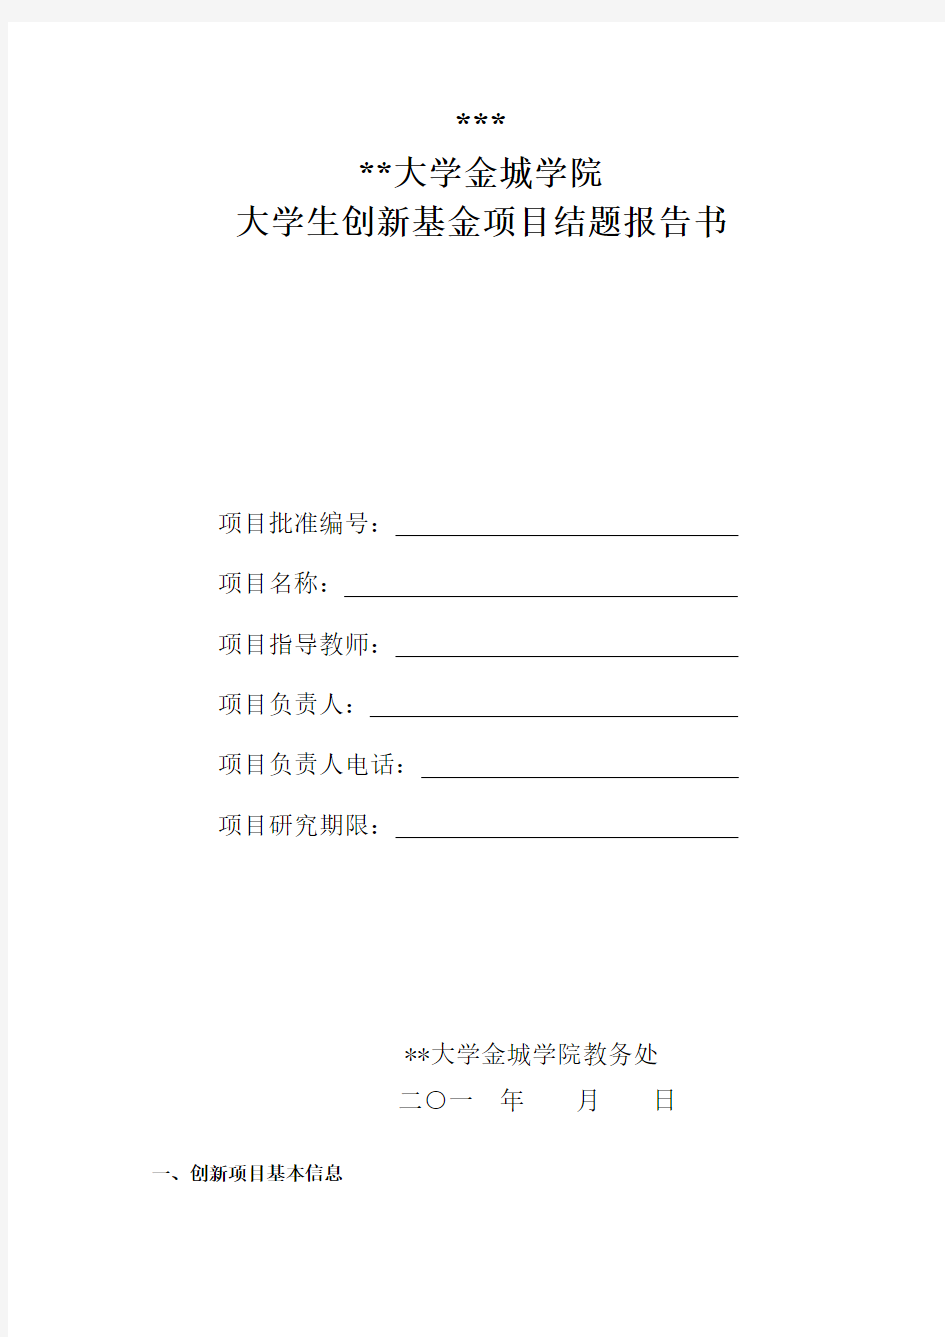 南京航空航天大学金城学院大学生创新基金项目结题报告书【模板】